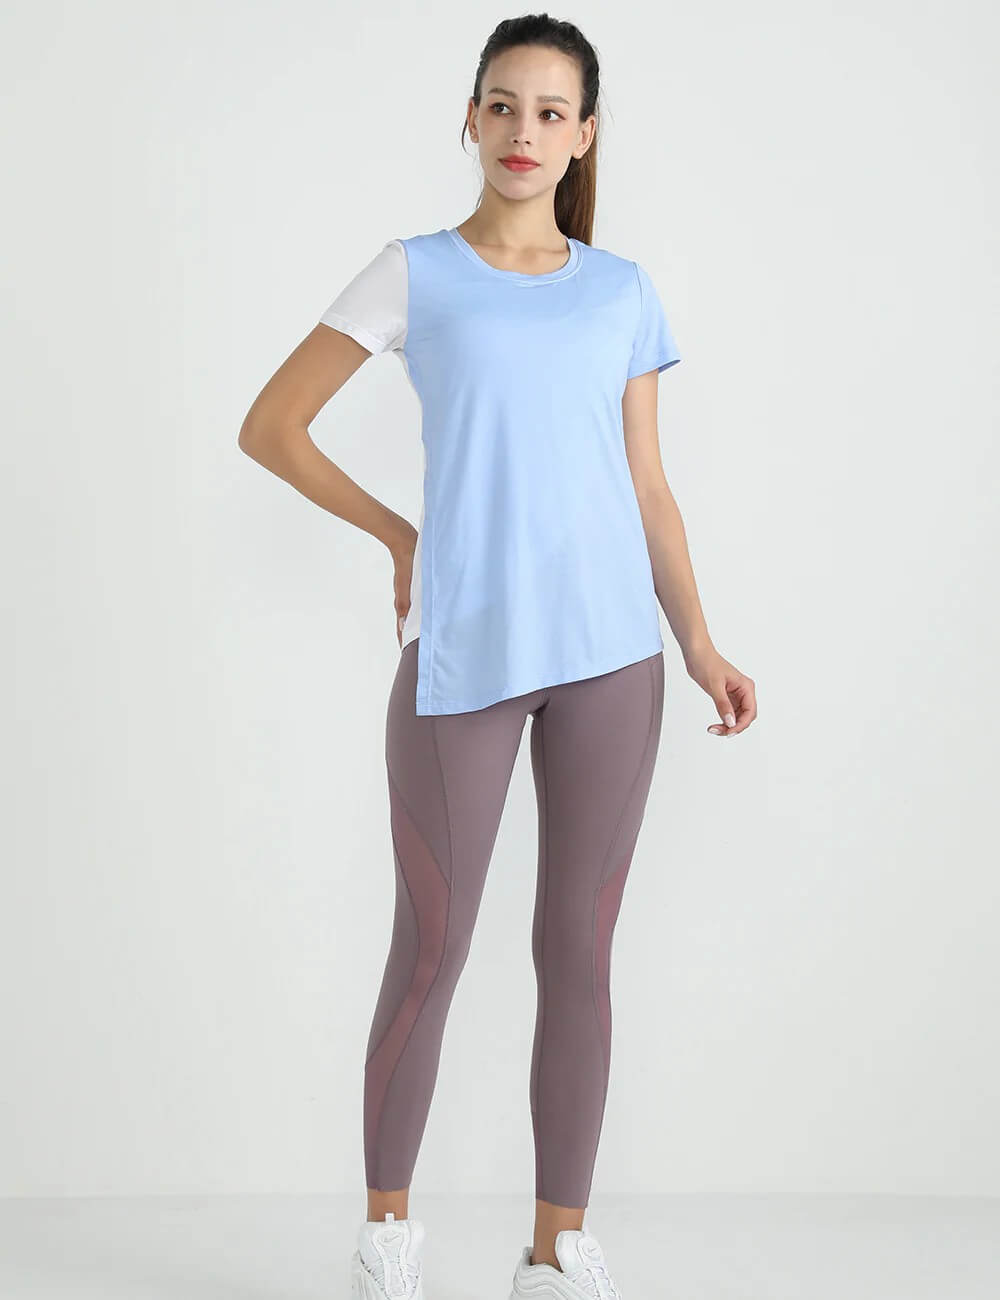 Women's Short Sleeve Crew-Neck Activewear T-Shirt